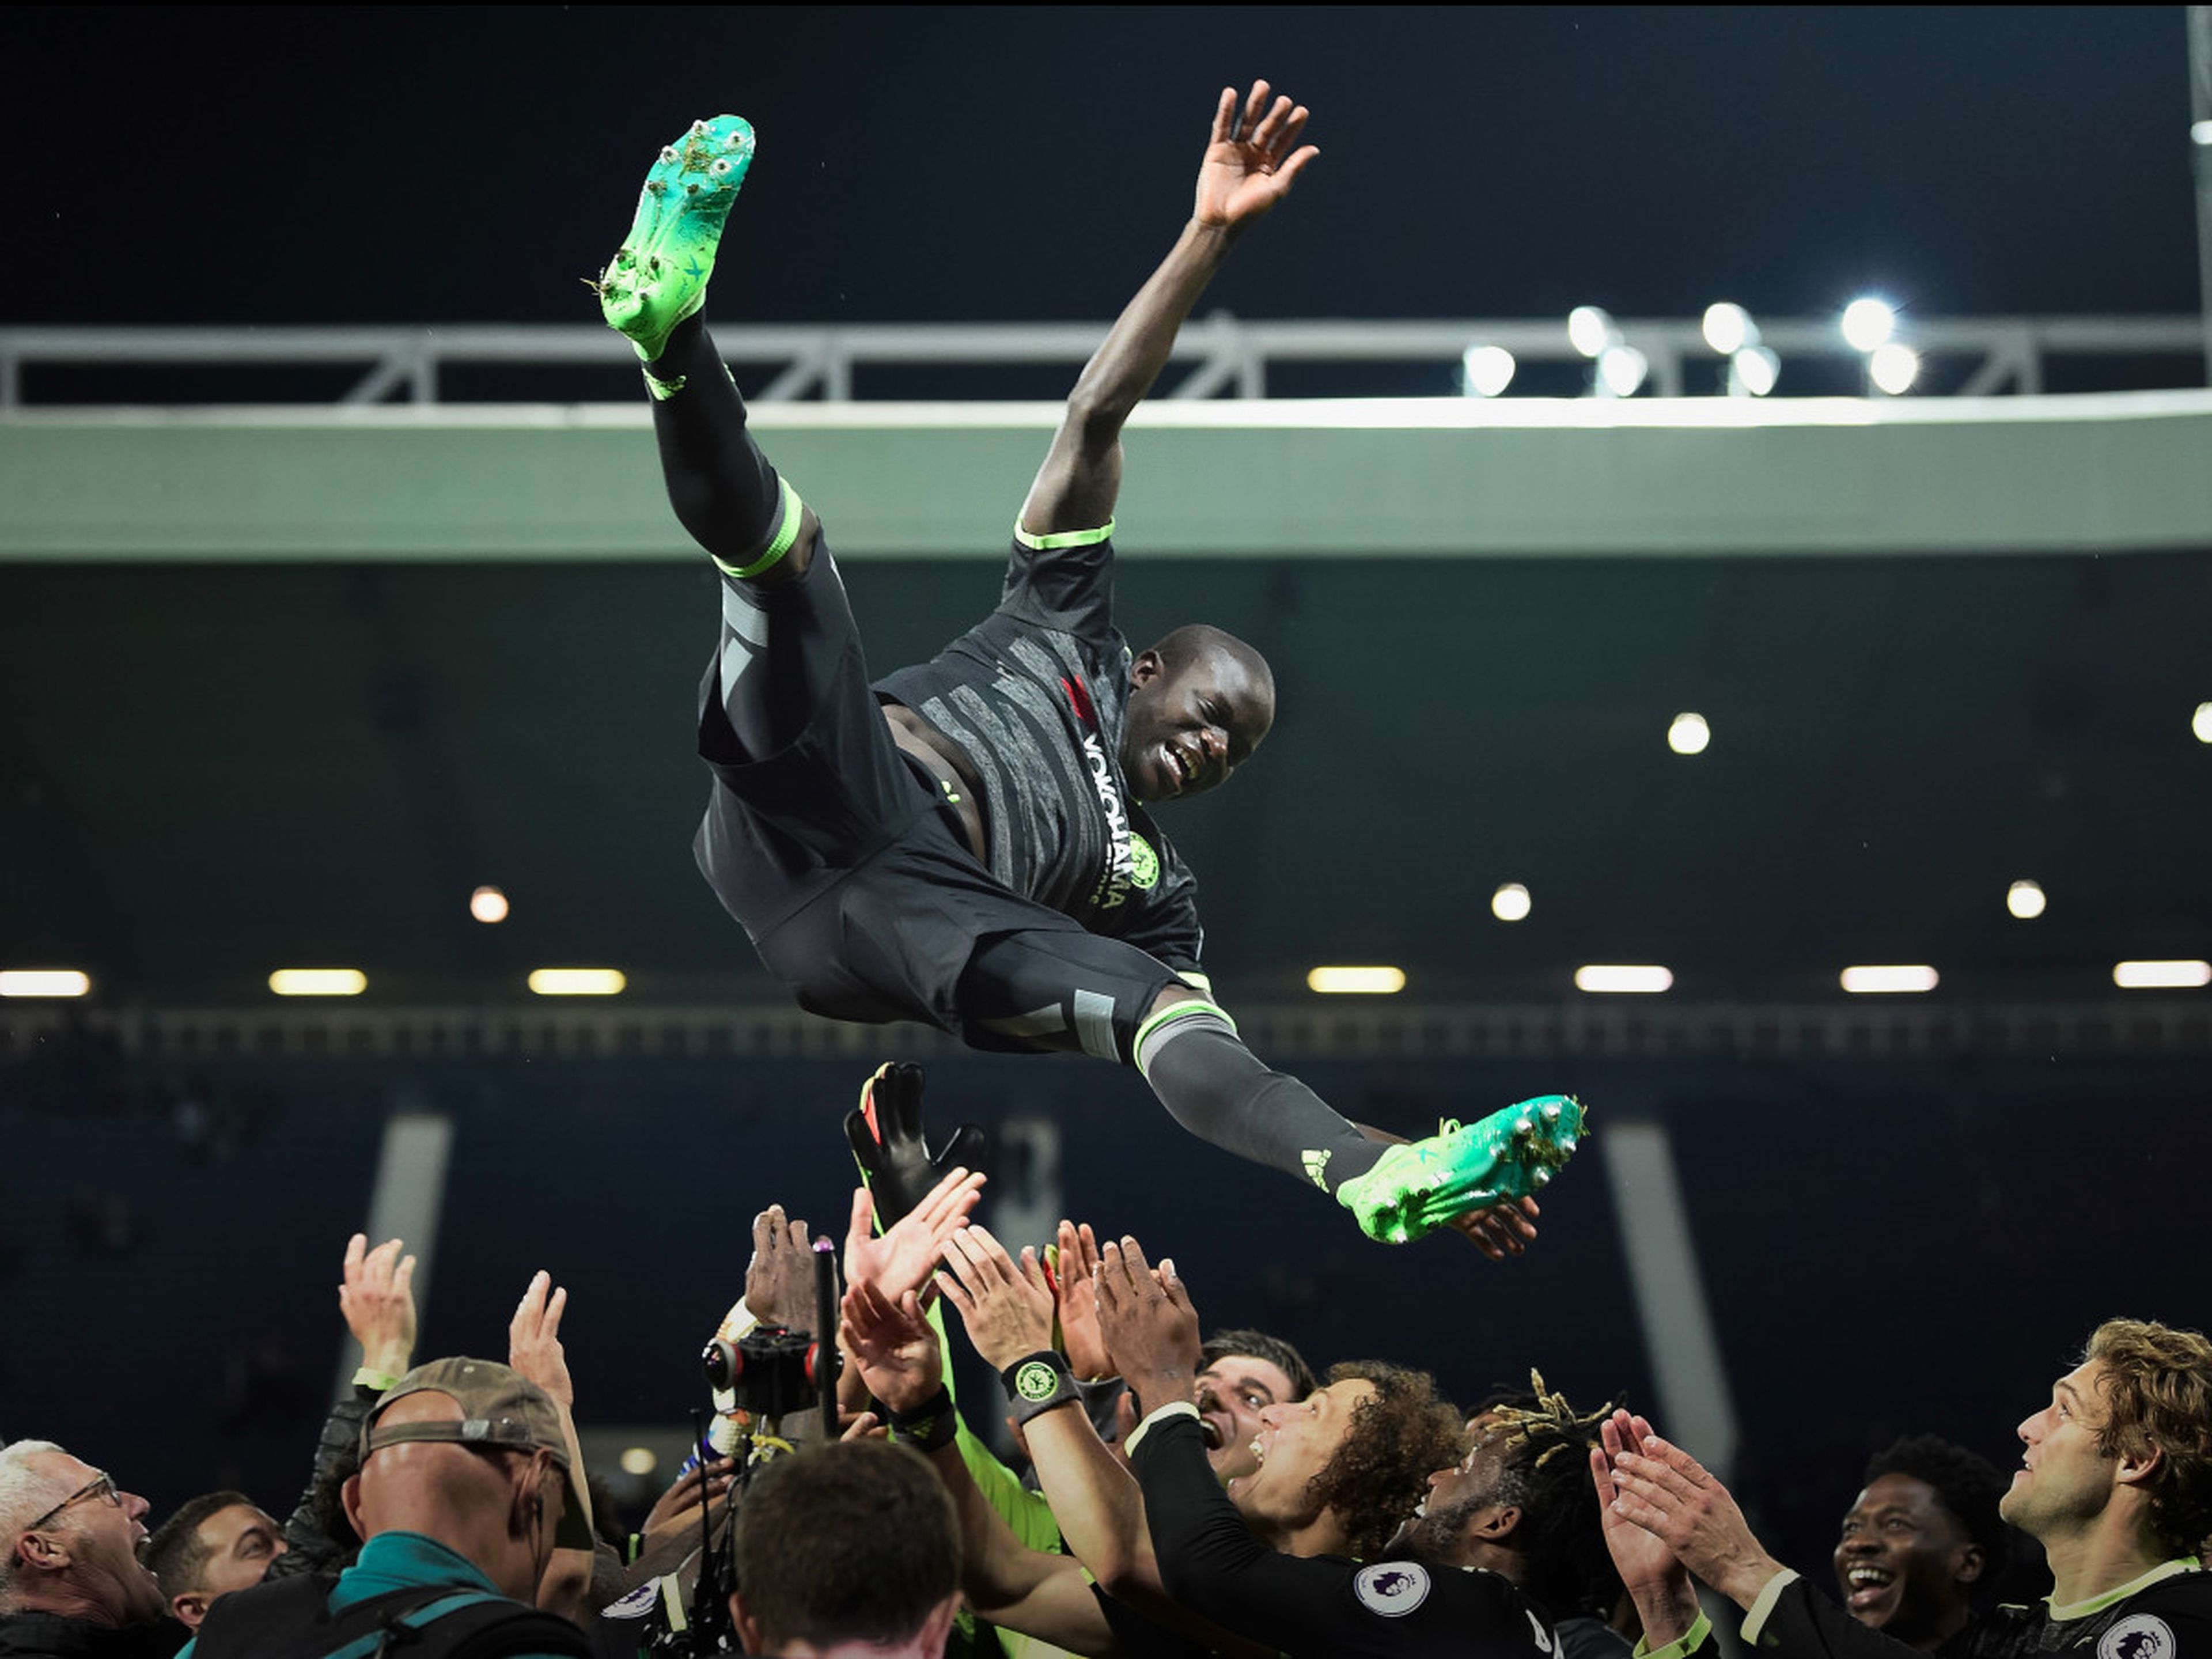 El jugador de fútbol Ngolo Kanté es manteado por sus compañeros del Chelsea tras ganar la Premier League 2017.